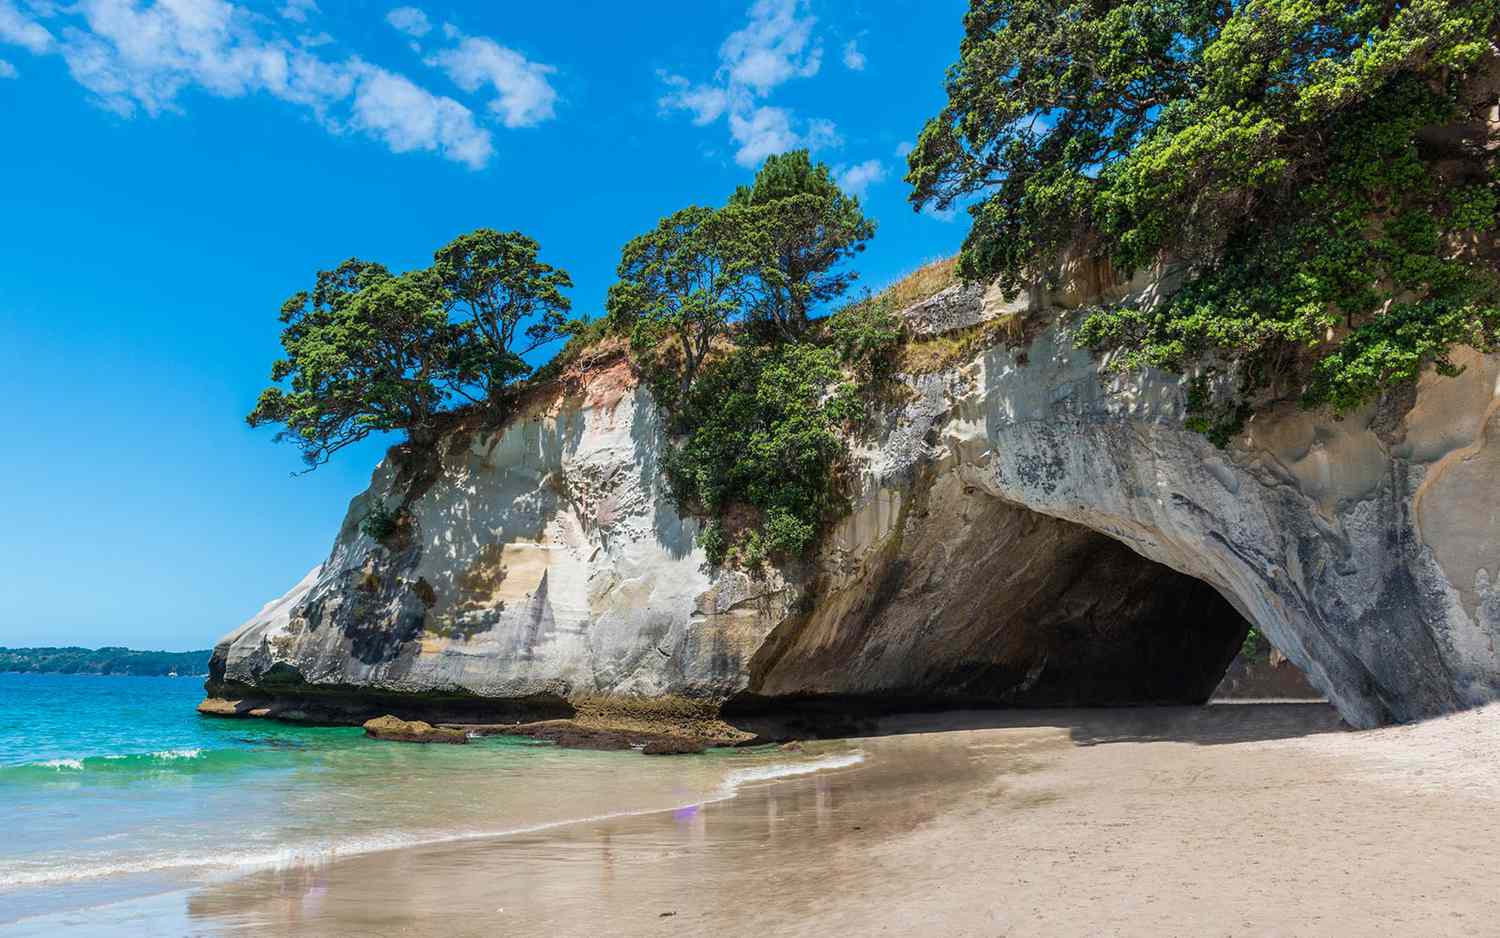 New Zealand’s best-known marine park